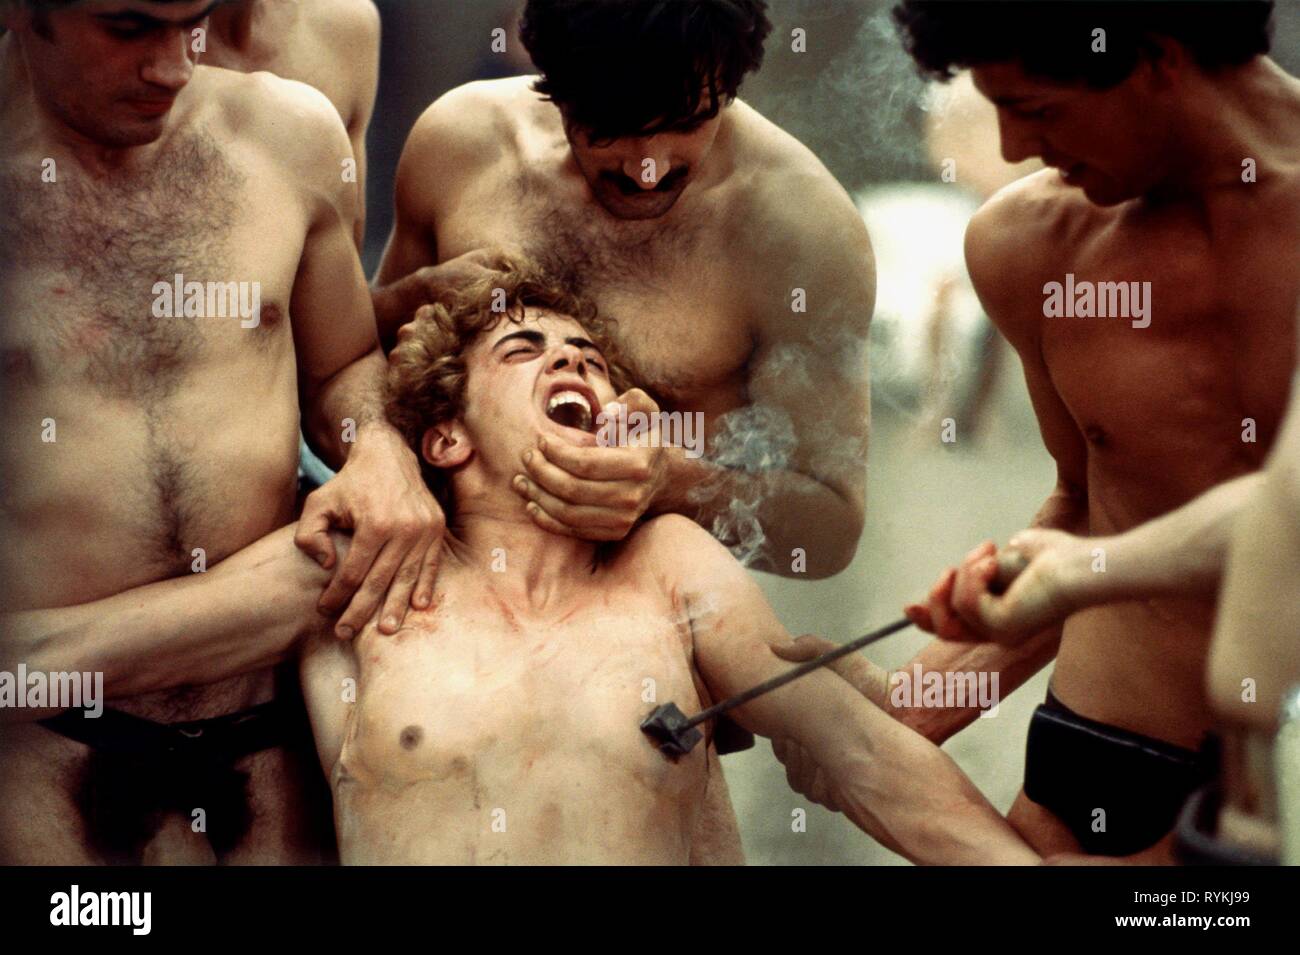 Scena di branding, SALO O LE 120 giornate di Sodoma, 1975 Foto Stock